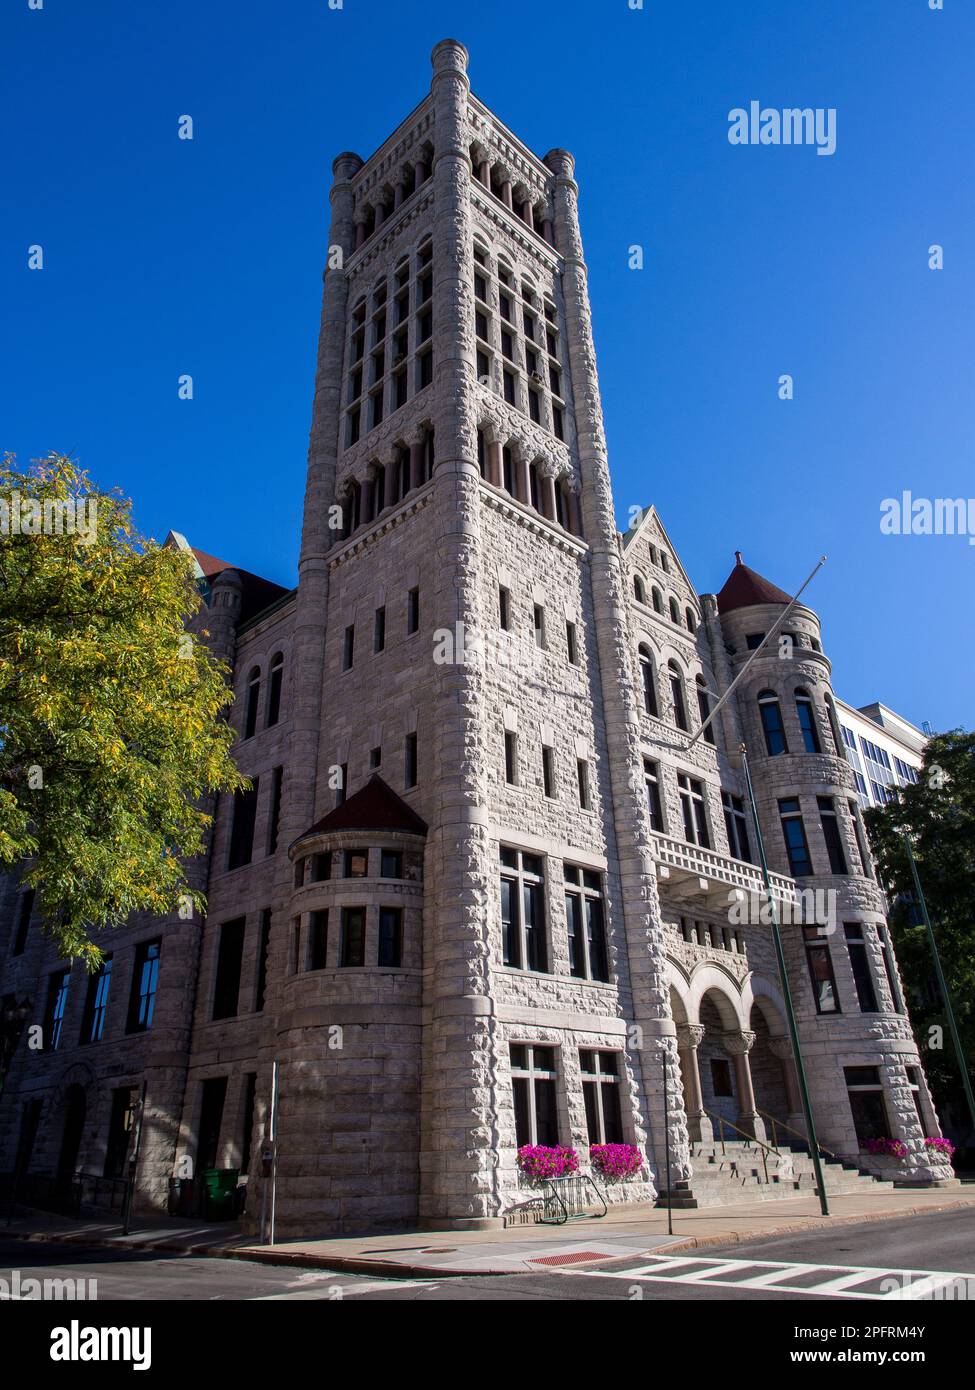 Das Rathaus von Syracuse ist das Rathaus von Syracuse, New York. Ungewöhnlich für Bürgergebäude in den Vereinigten Staaten, es wurde von 1889 bis 189 gebaut Stockfoto